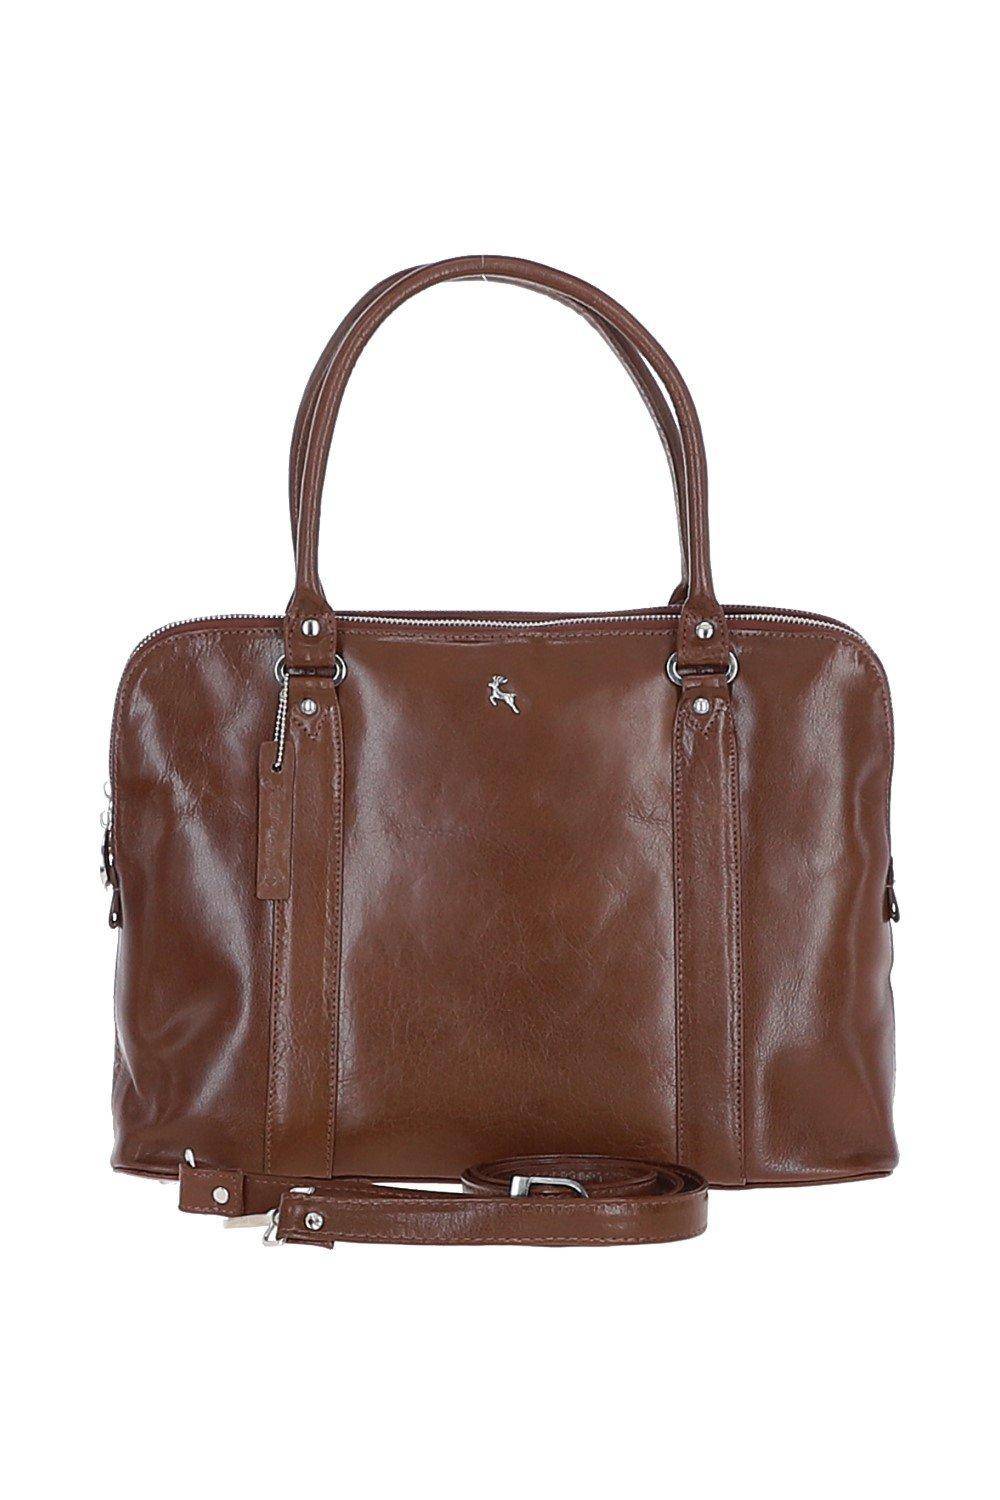 Большая трехсекционная кожаная сумка растительного дубления Ashwood Leather, коричневый сумка тоут bagira повседневная натуральная кожа внутренний карман регулируемый ремень коричневый